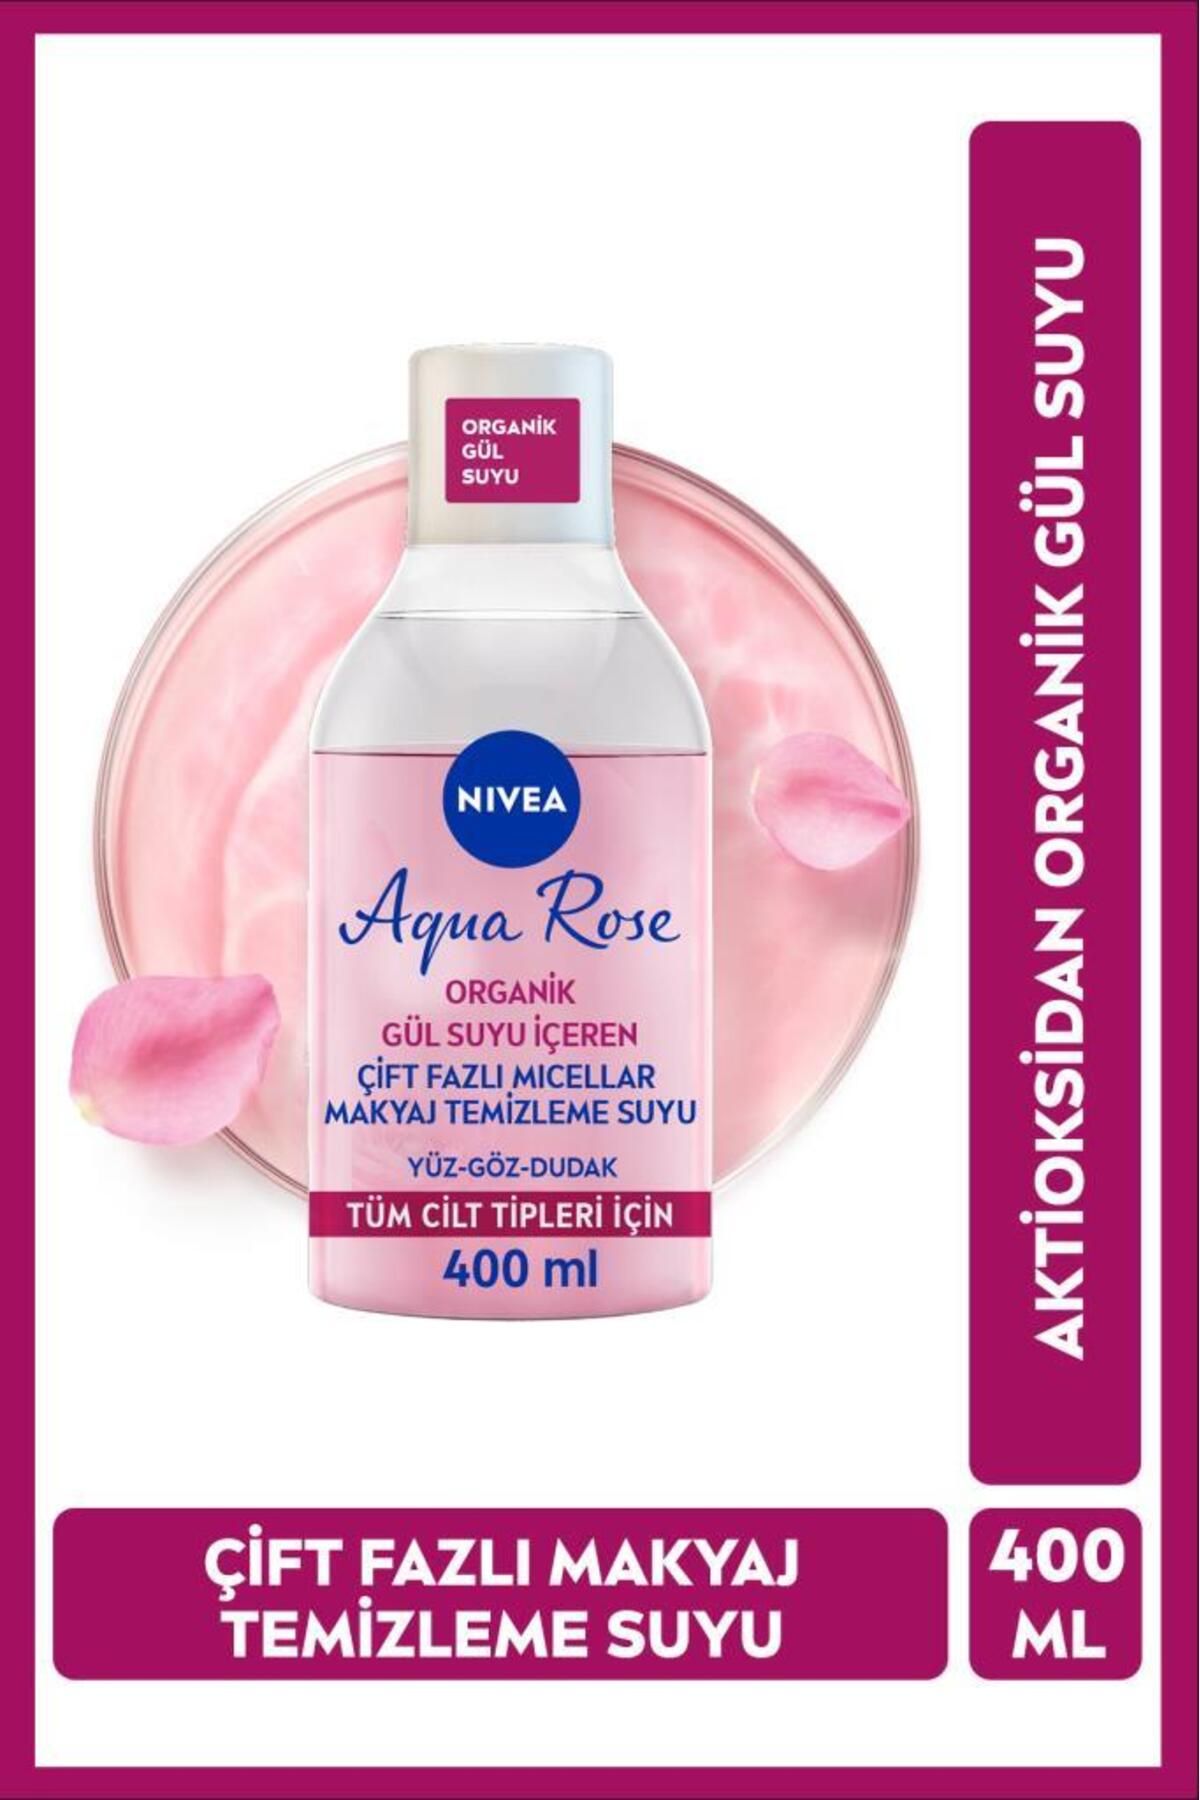 NIVEA Aqua Rose Micellar Gül Suyu Çift Fazlı Makyaj Temizleme Suyu 400ml, Yüz Göz Ve Dudak, Nemlendirici 82813